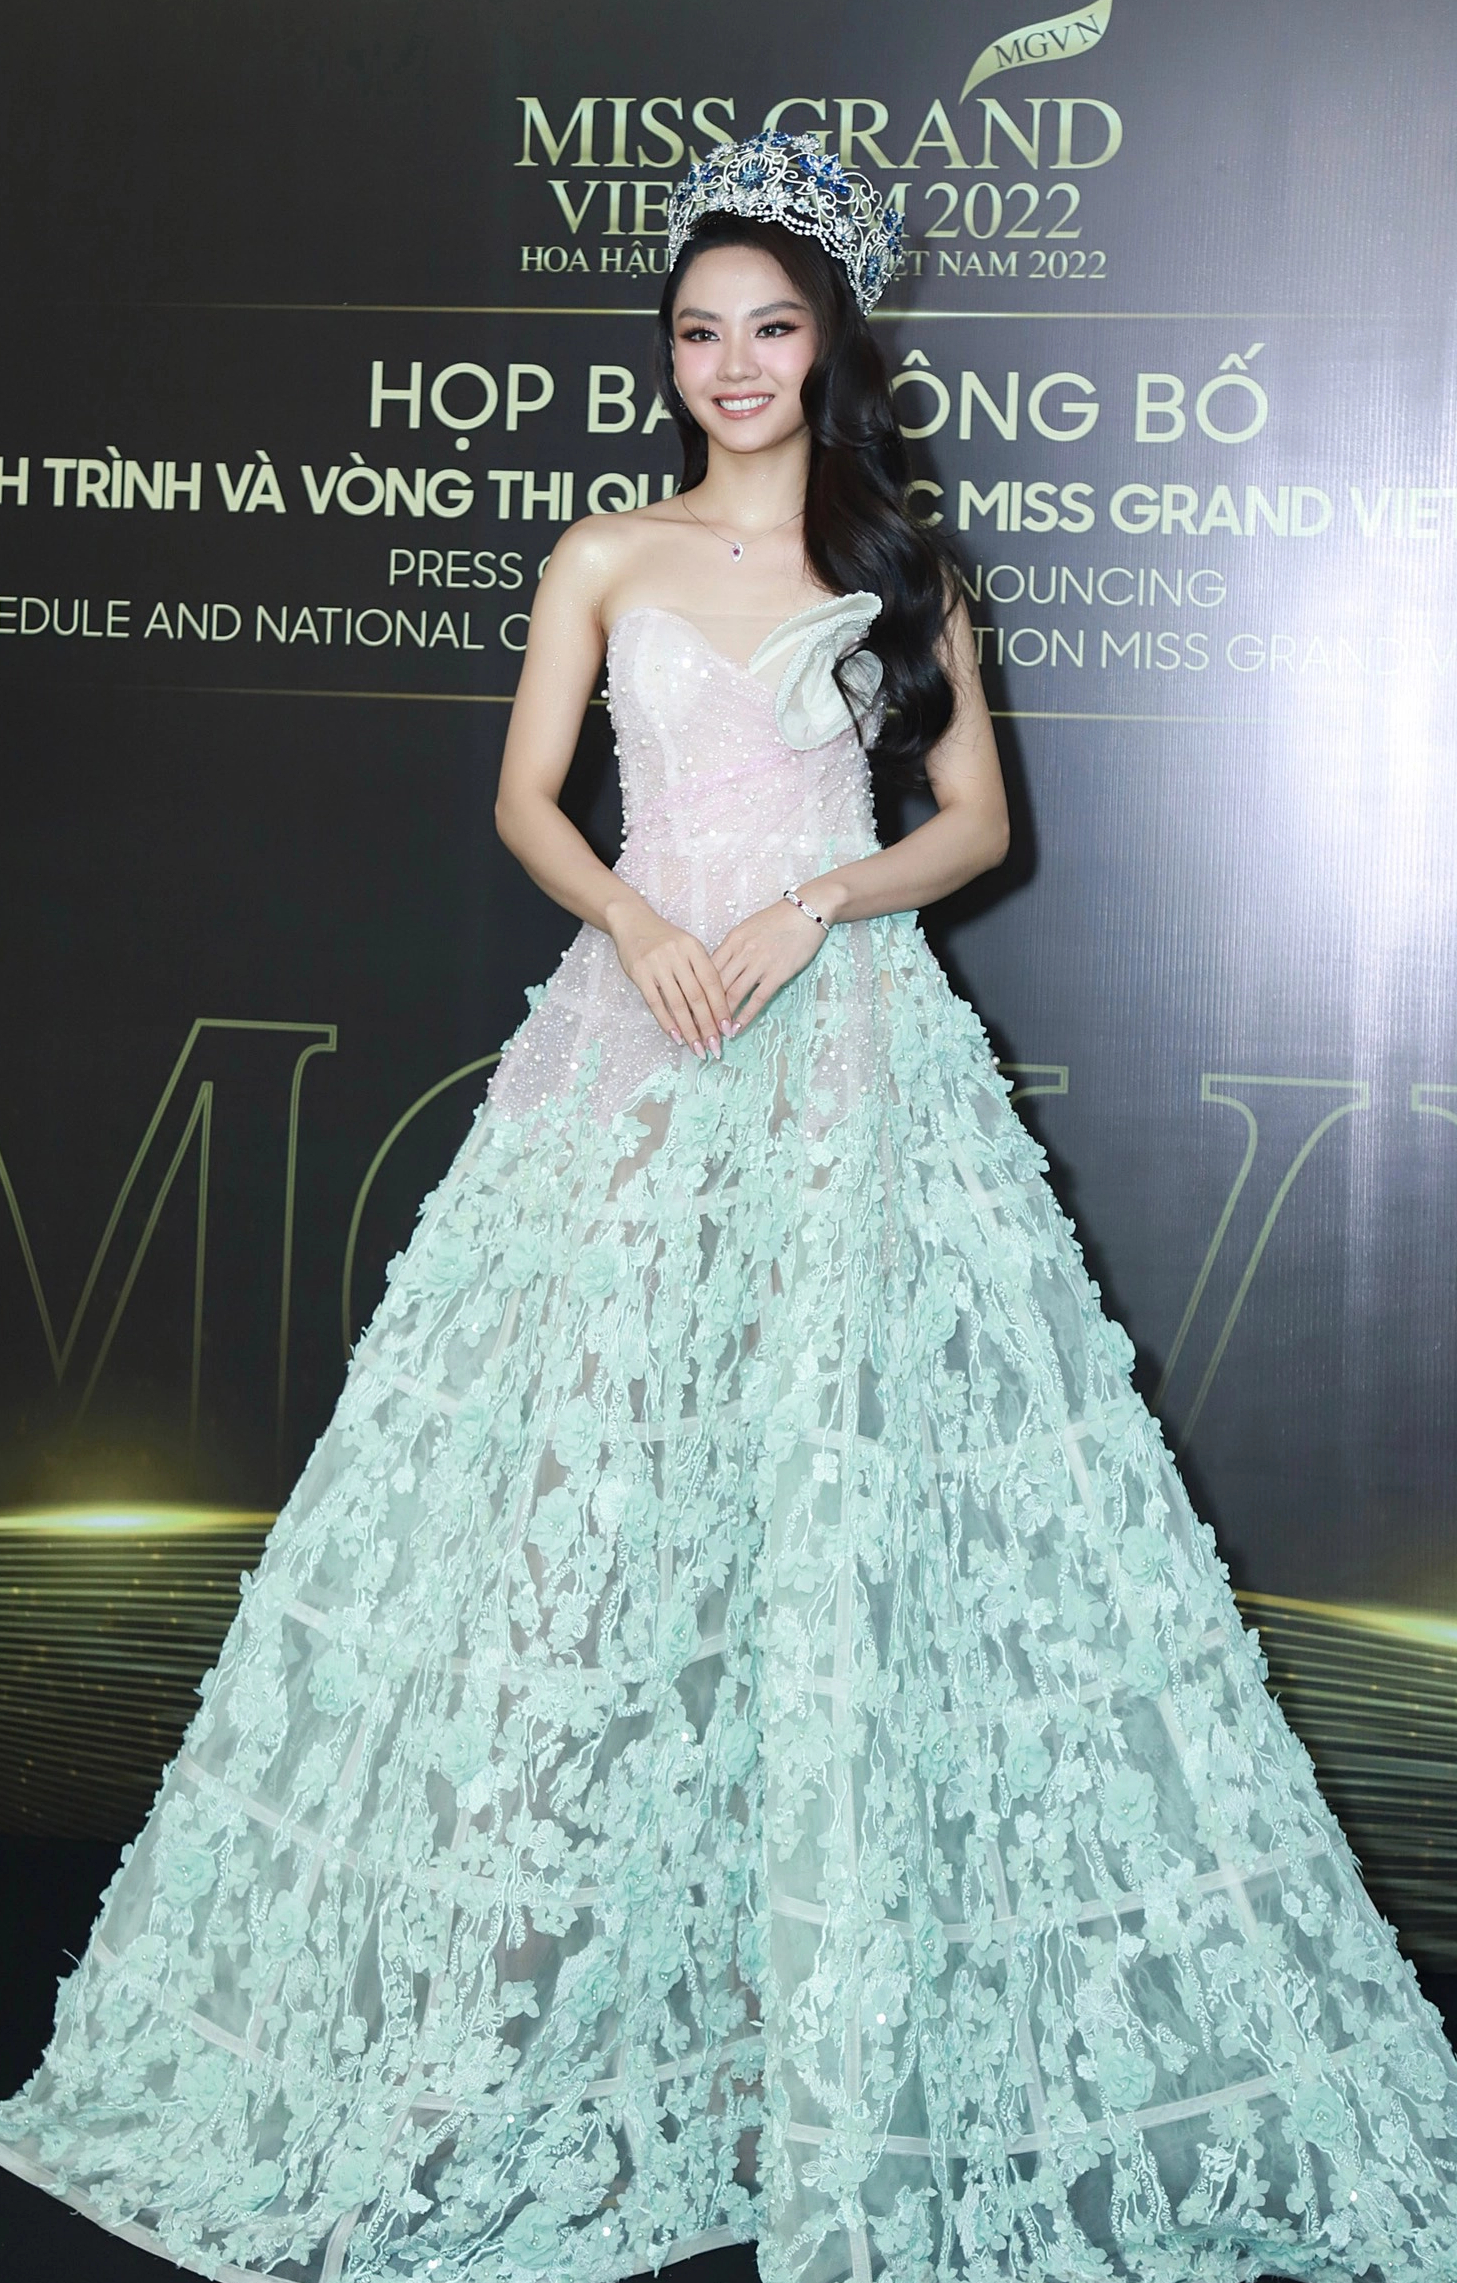 Top 3 Miss World Vietnam 2022 đọ sắc bên Hoa hậu Thùy Tiên và dàn mỹ nhân đình đám Vbiz - Ảnh 4.